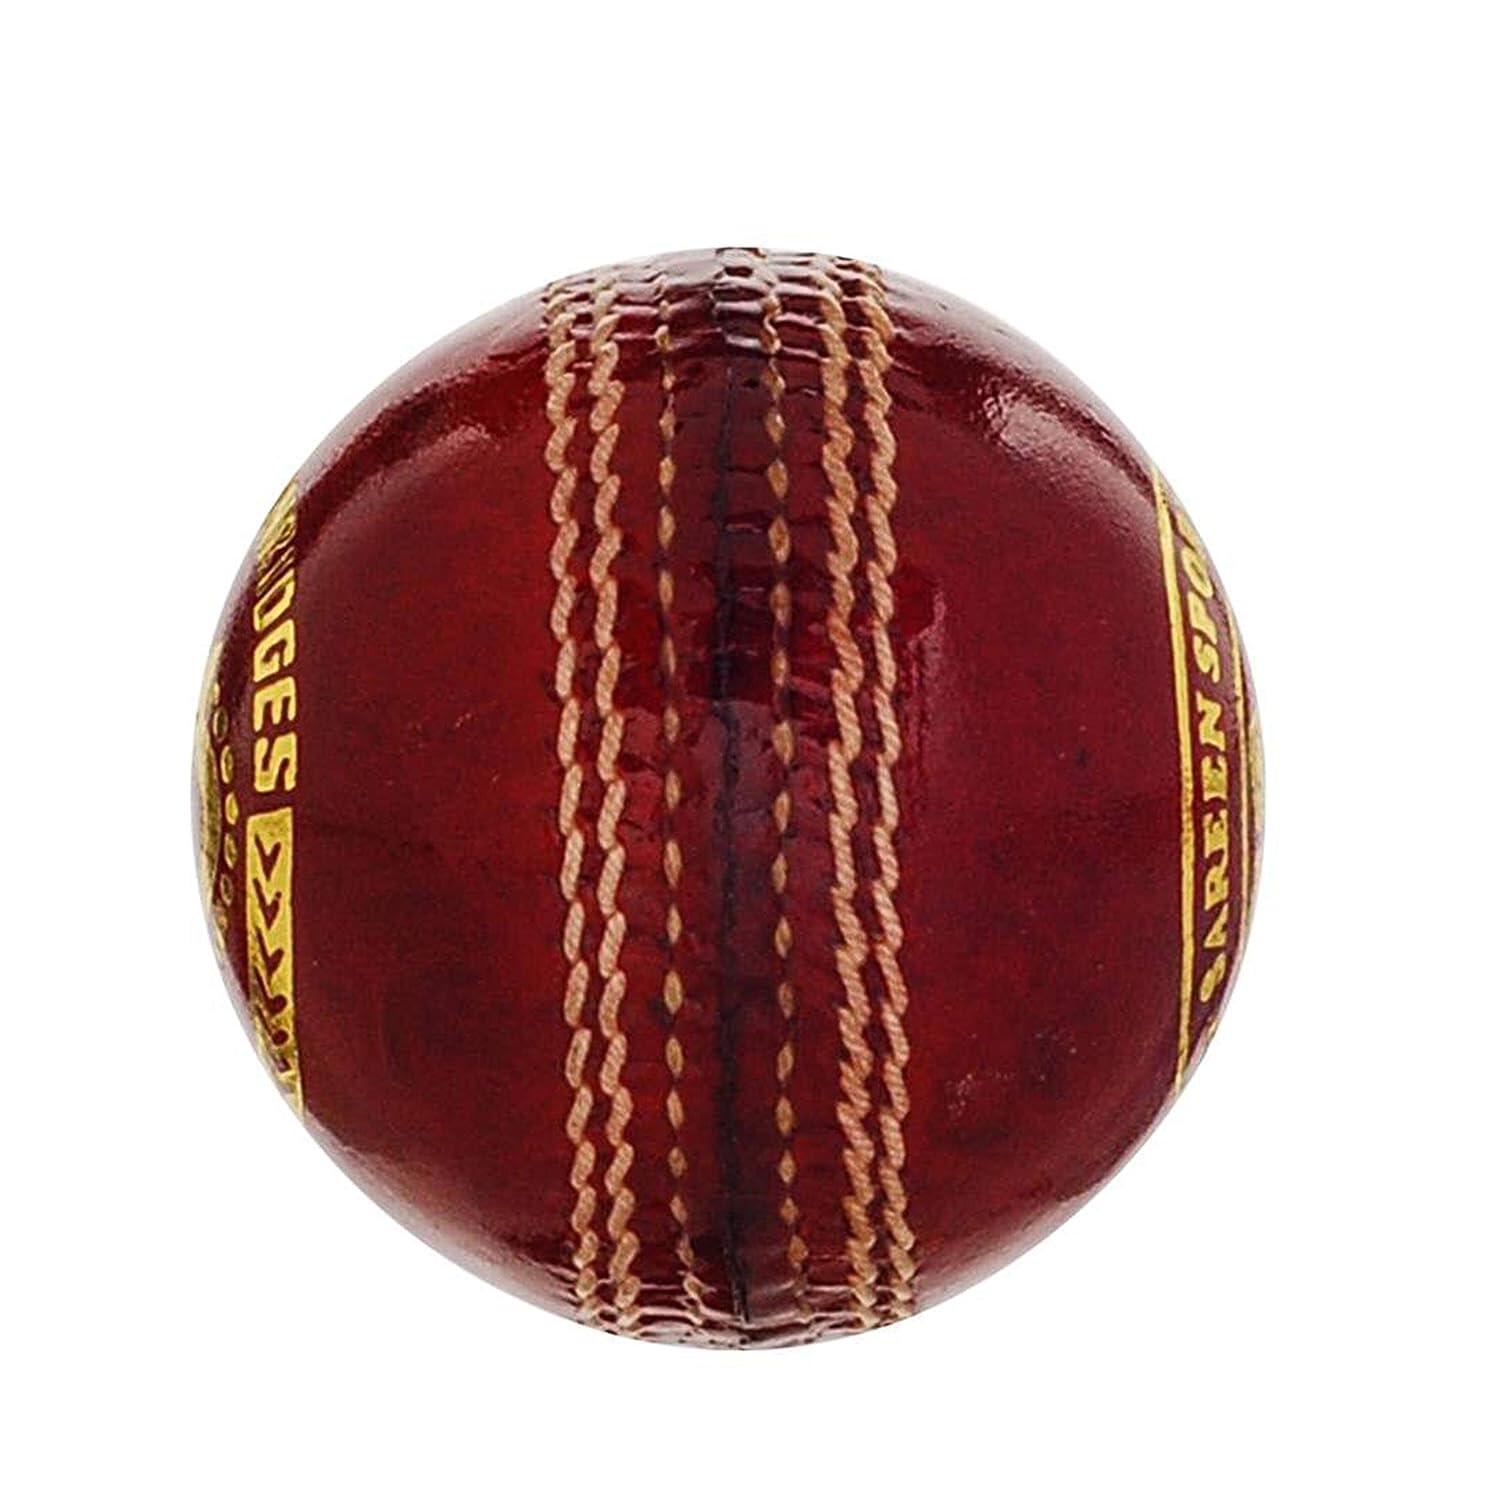 SS Swinger Cricket Ball -Pack of 2 2/4